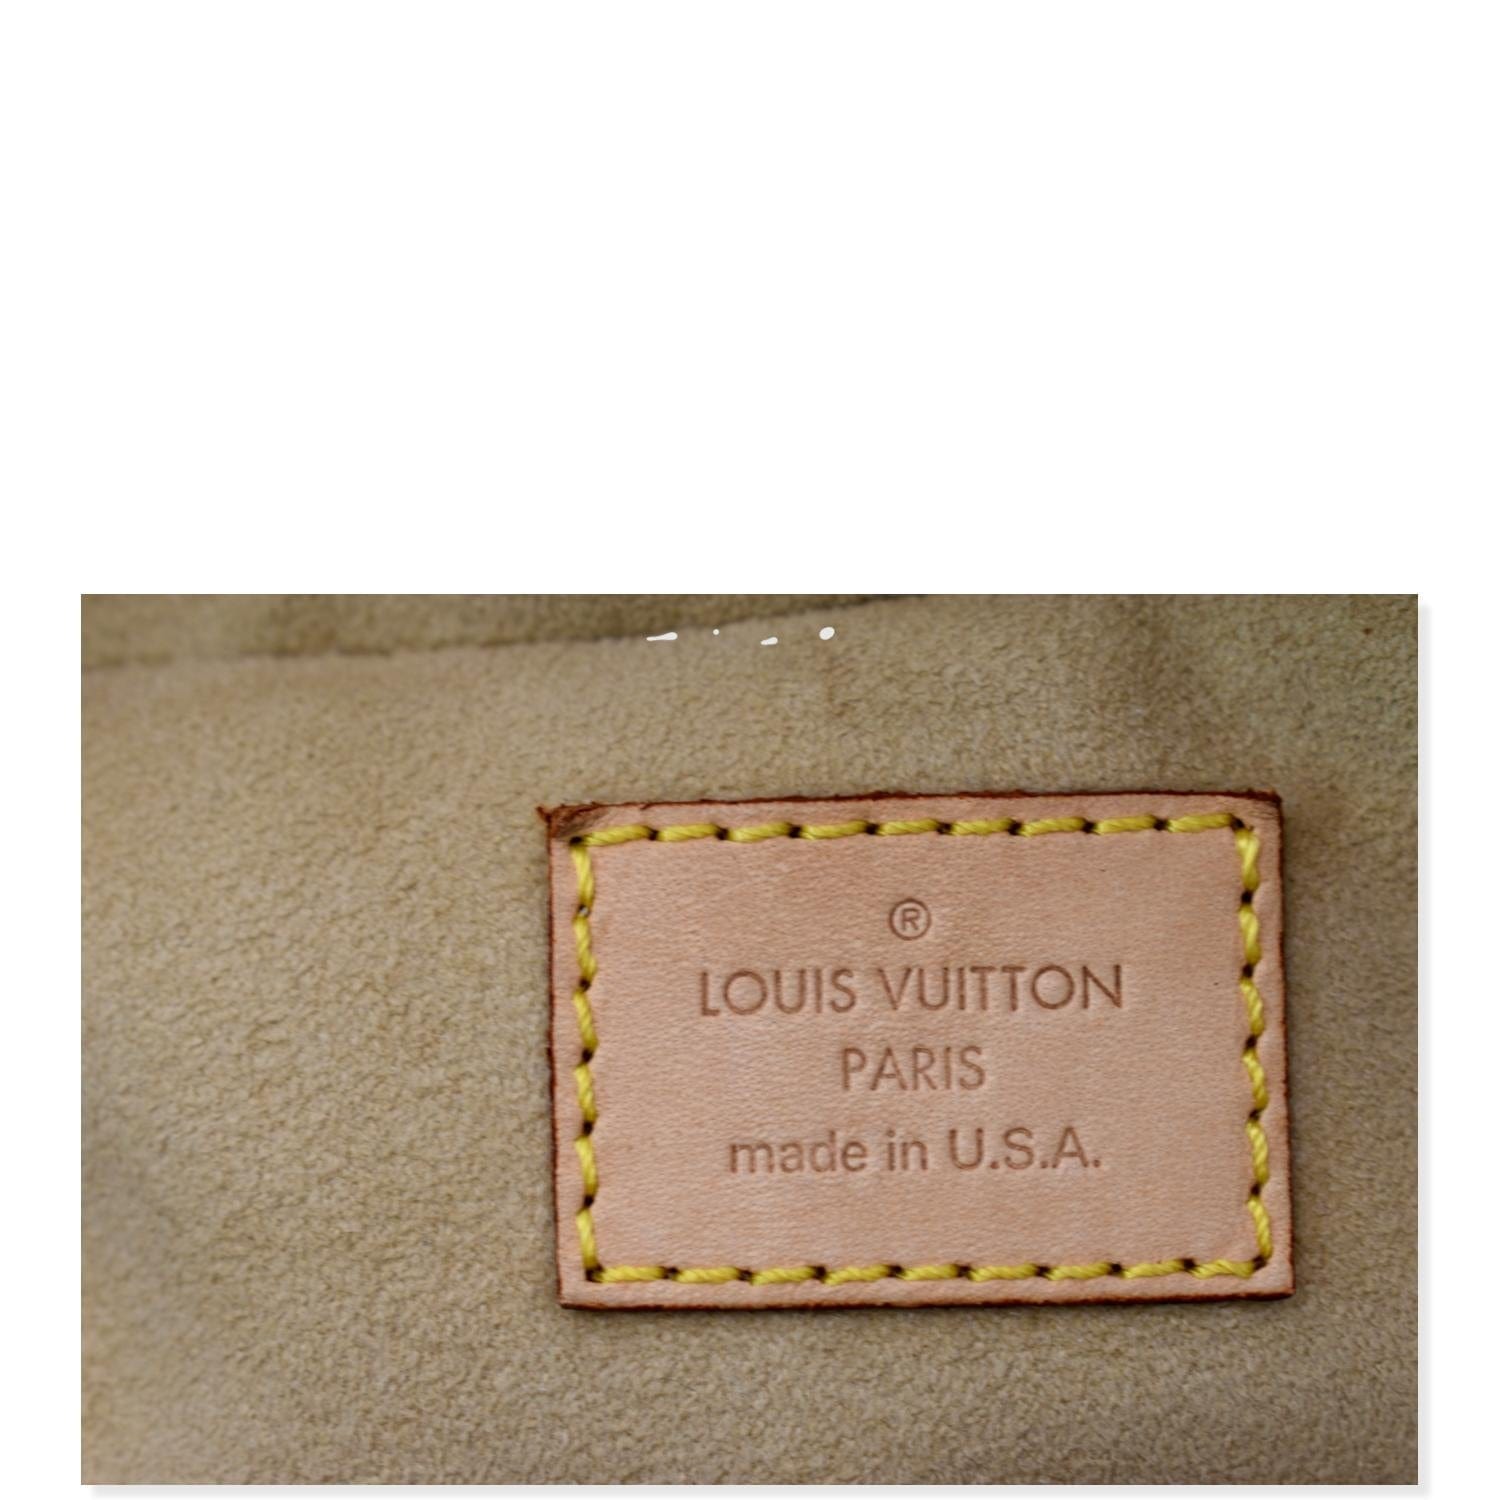 Authentic LOUIS VUITTON LARGE Manhattan PM Monogram Purse. Excellent  Condition.